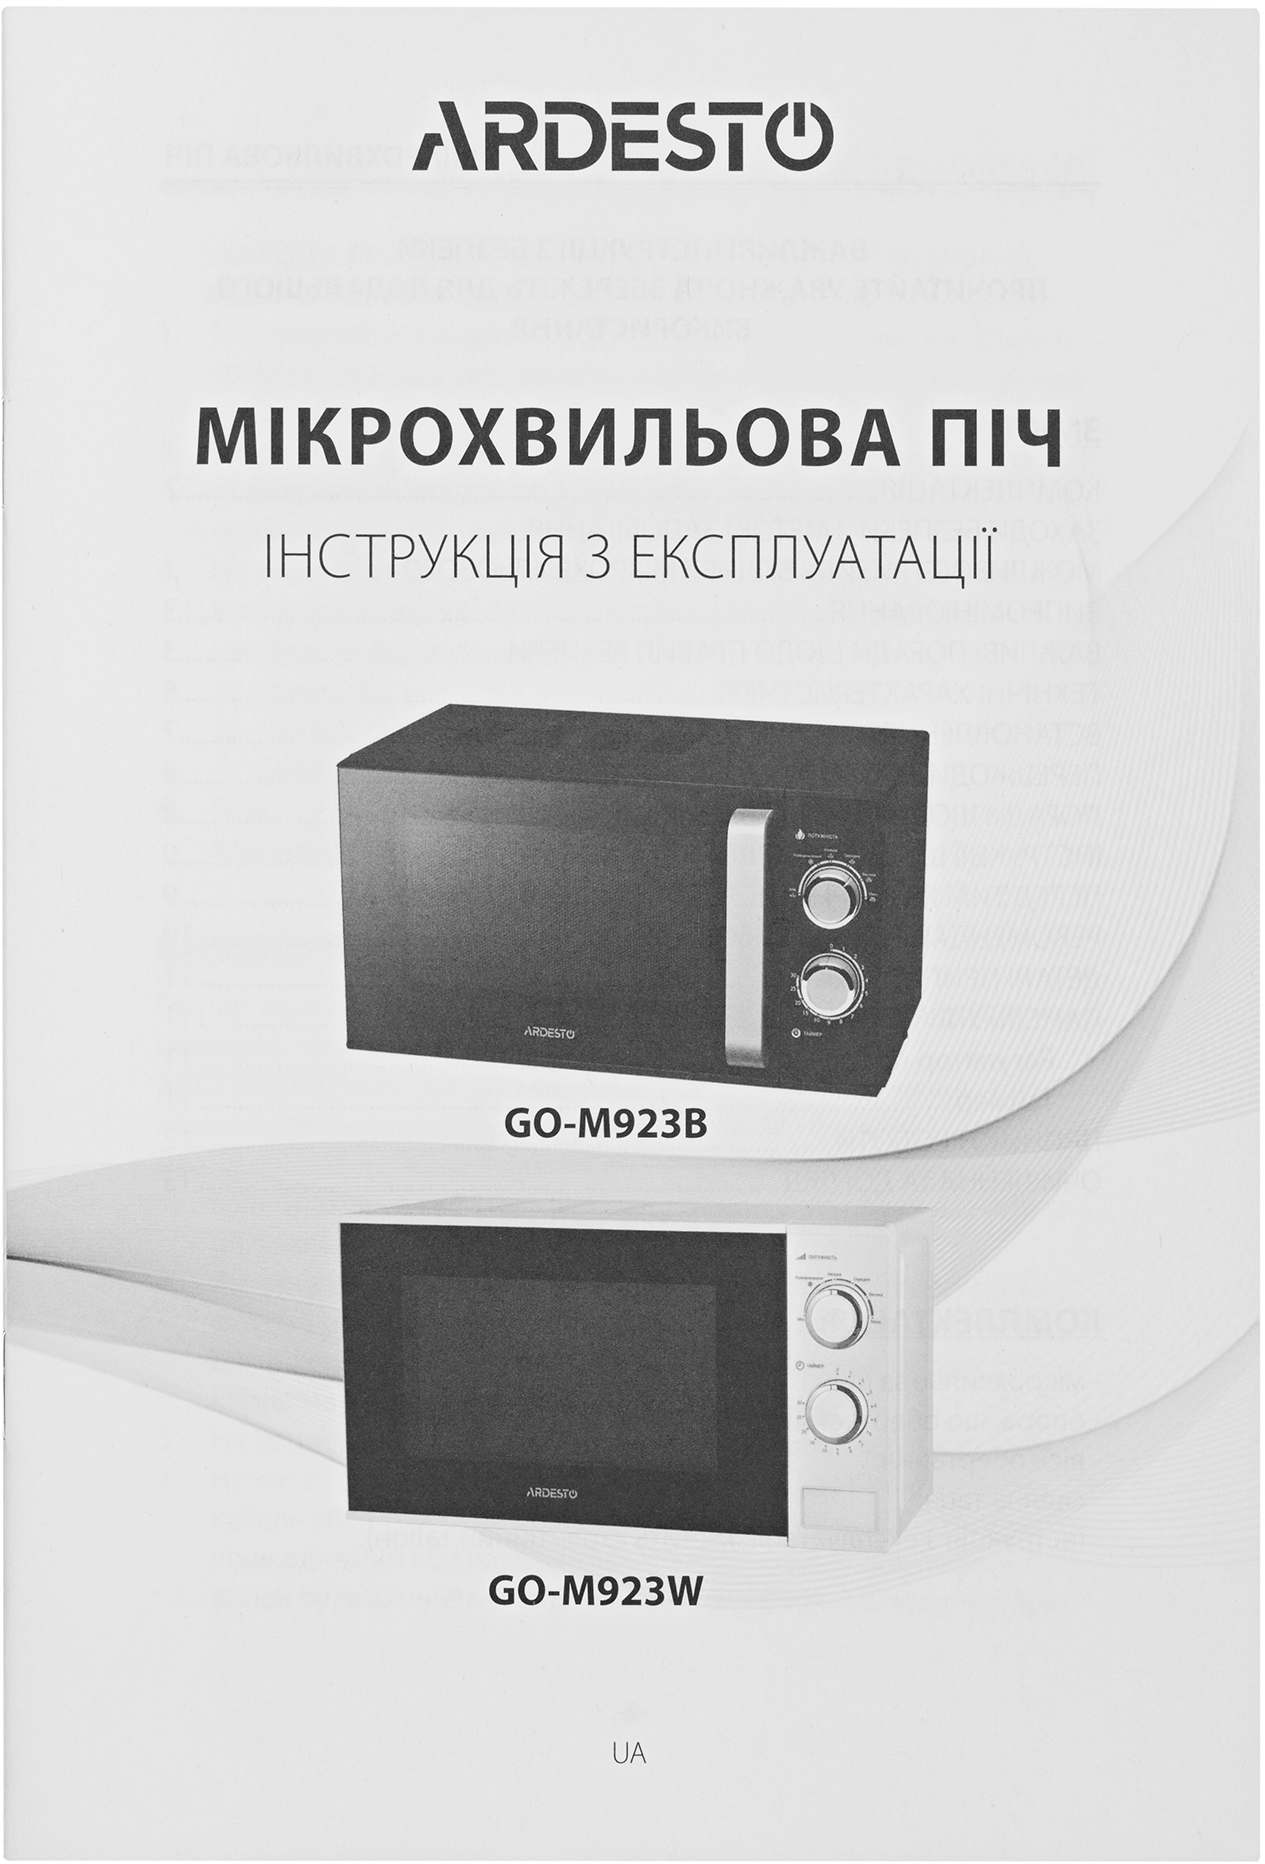 Микроволновая печь Ardesto GO-M923W отзывы - изображения 5